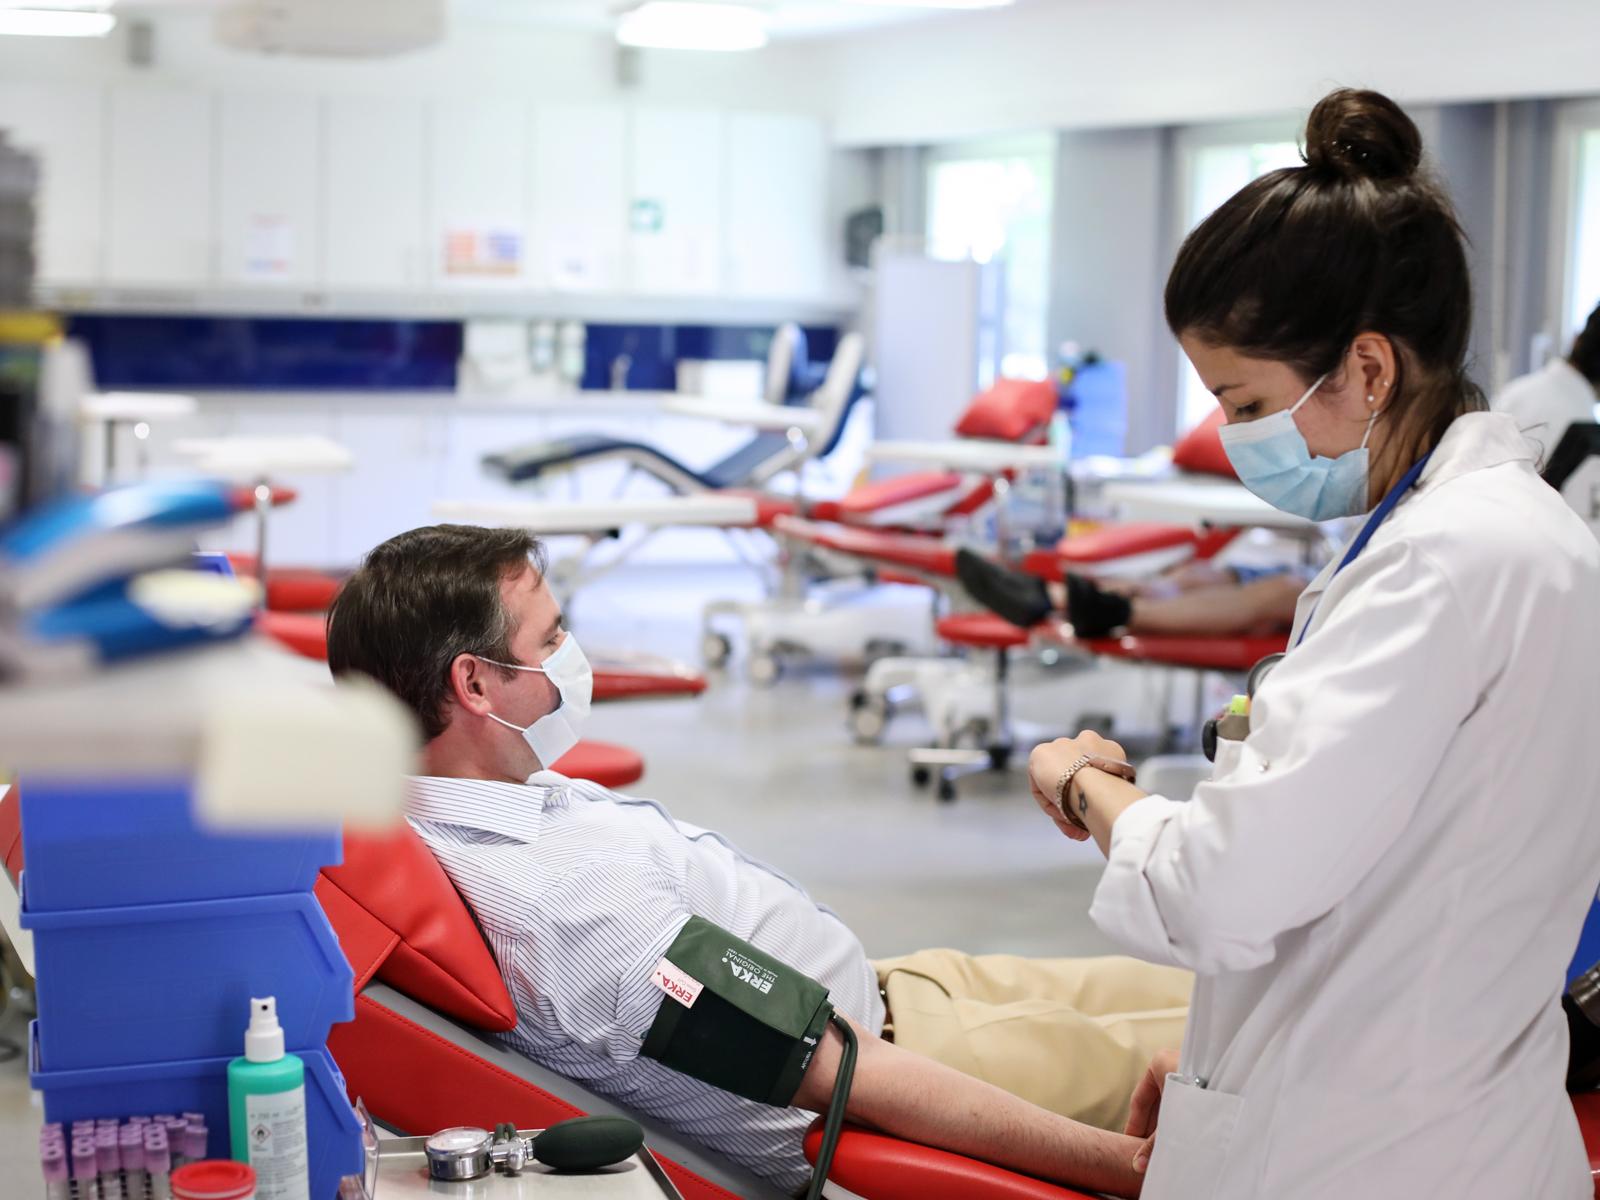 Le Prince héritier s'est rendu au Centre de transfusion sanguine de la Croix-Rouge Luxembourgeoise pour donner son sang